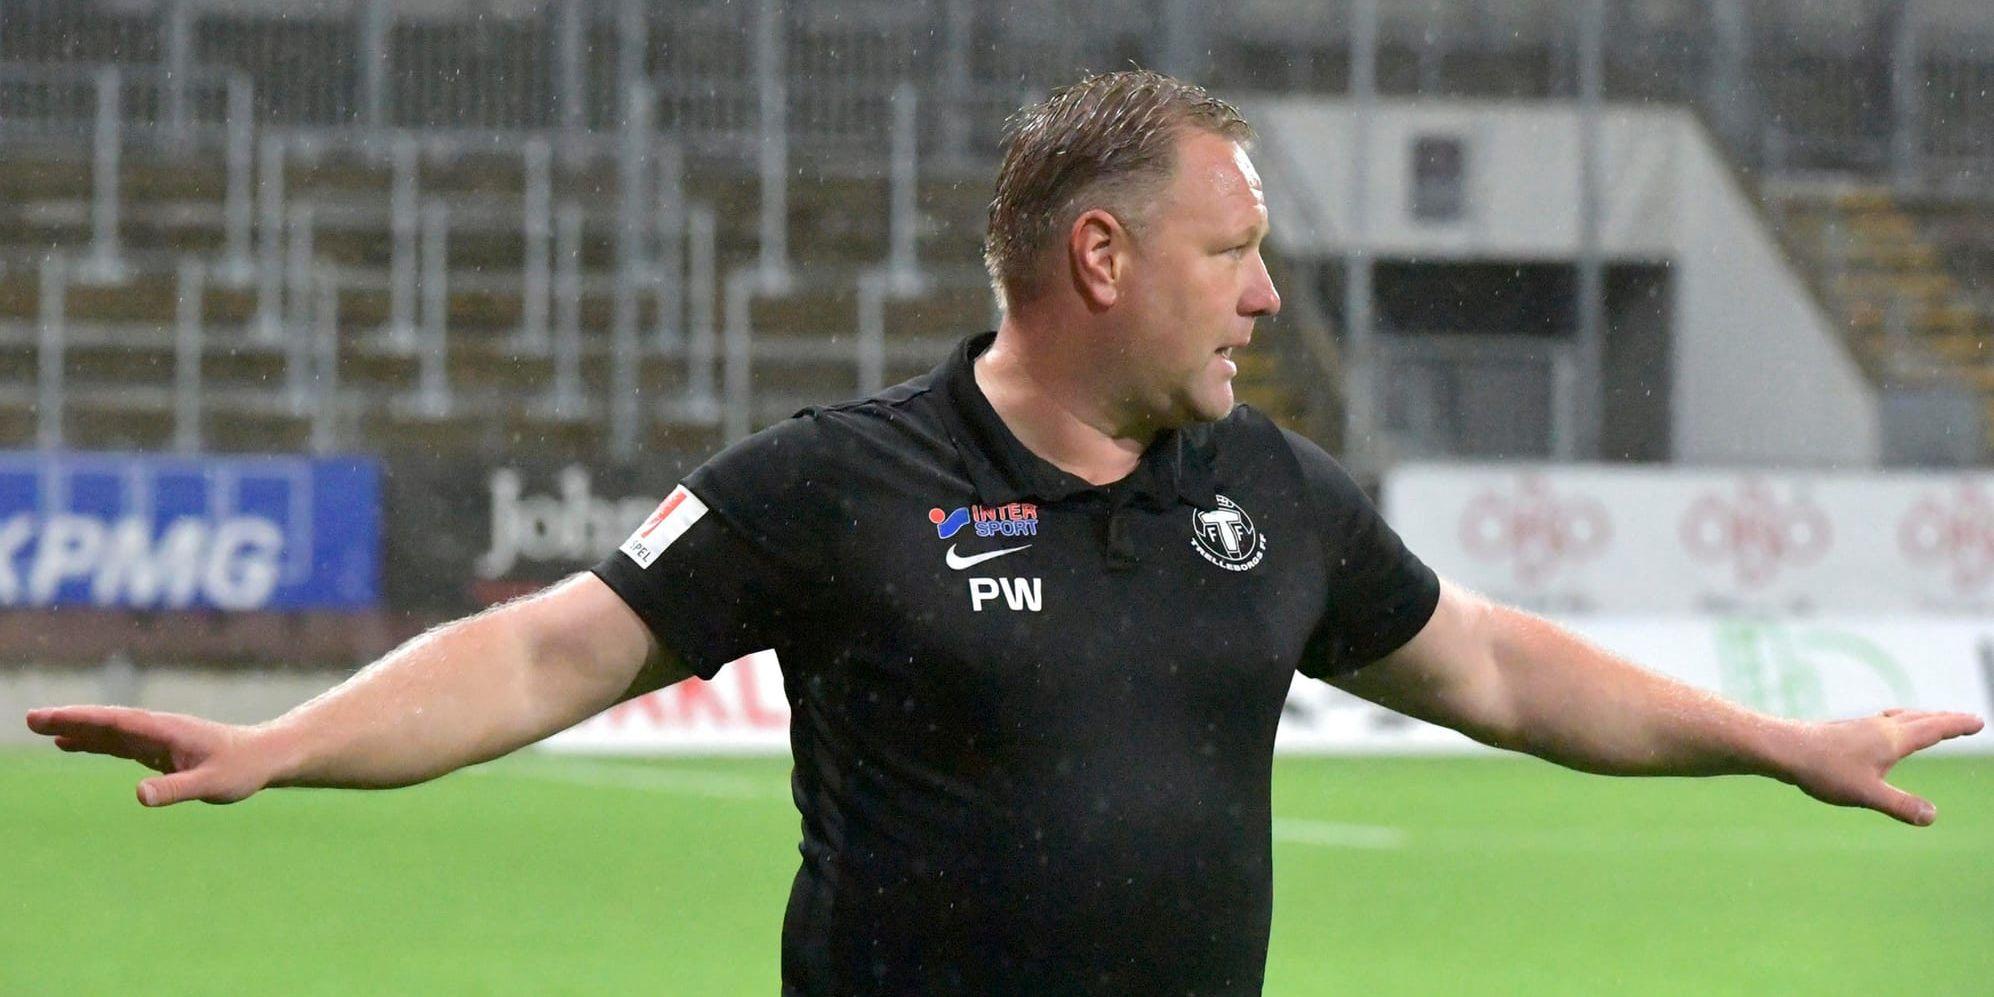 "Med tanke på situationen vi är i så har vi inte råd att kasta in bollen i eget mål", sade tränare Patrick Winqvist efter Trelleborgs 0–4 mot Örebro.